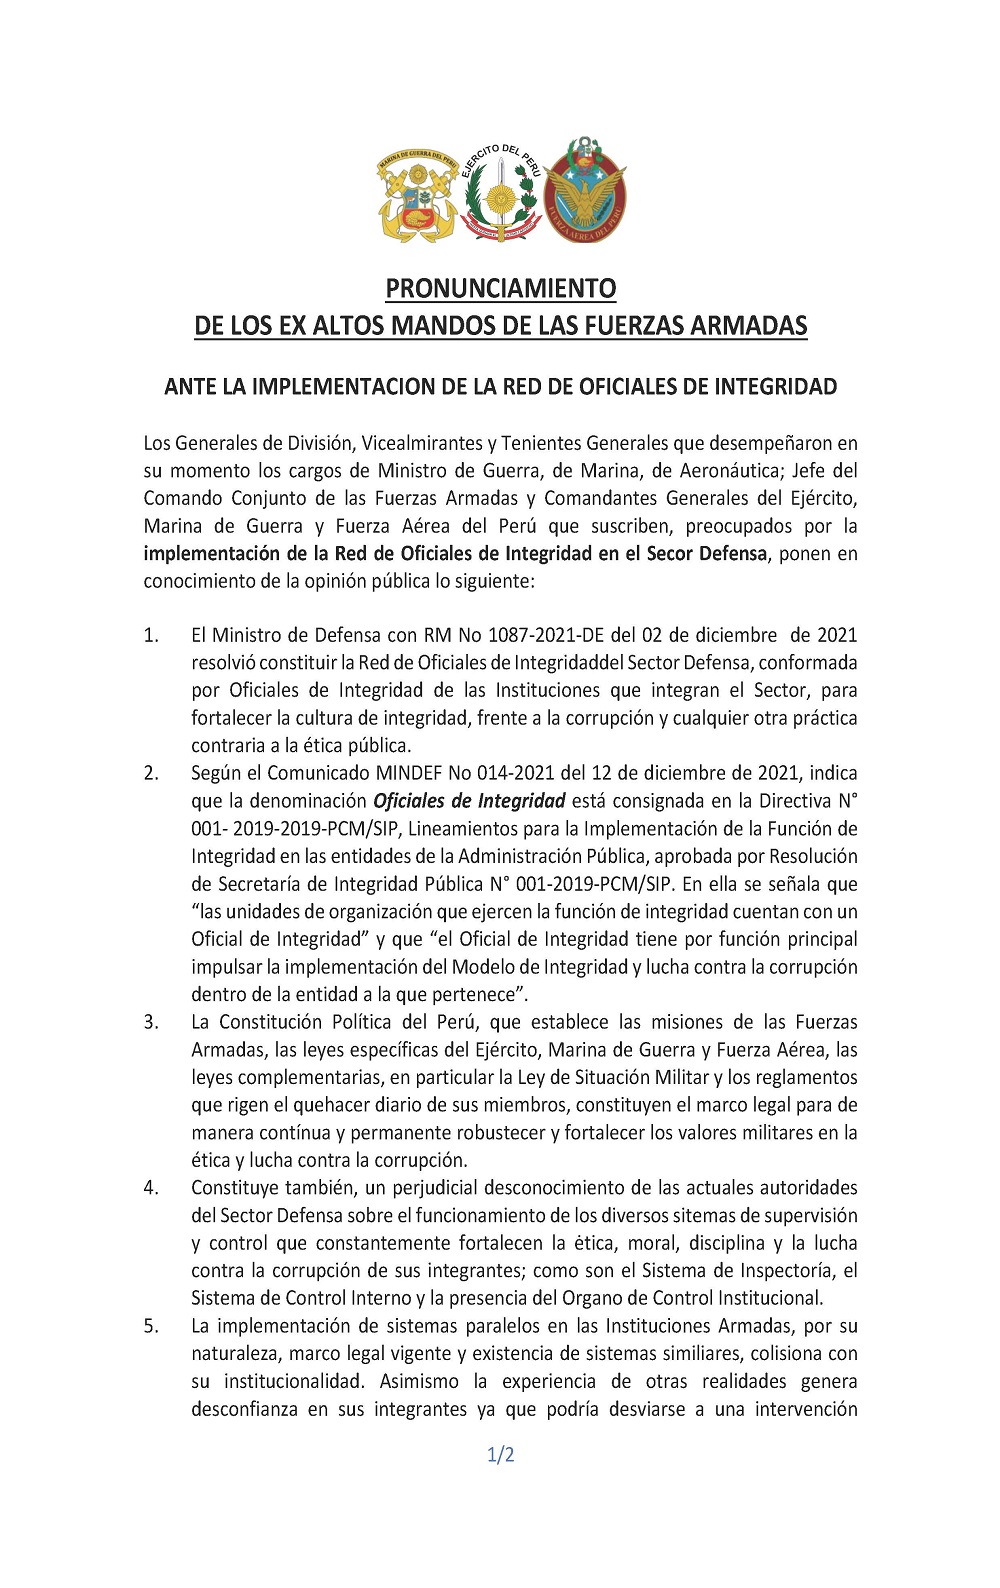 PRONUNCIAMIENTO DE LOS EX ALTOS MANDOS DE LAS FUERZAS ARMADAS